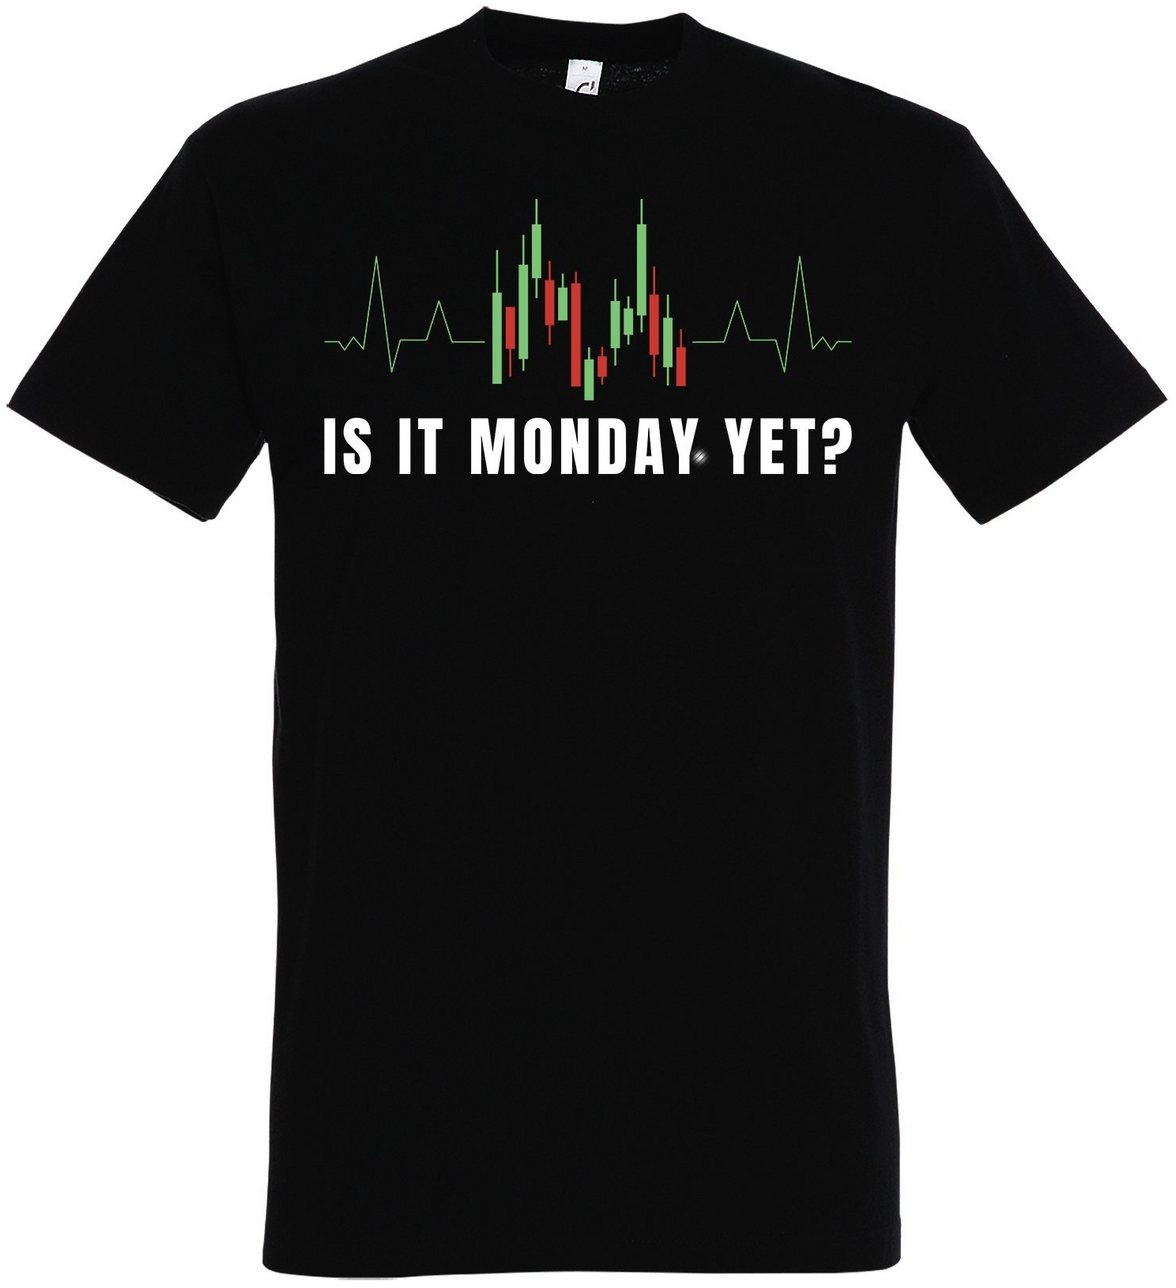 Youth Designz Print-Shirt "Is It Monday Yet?" Herren Shirt mit lustigem Spruch schwarz XL